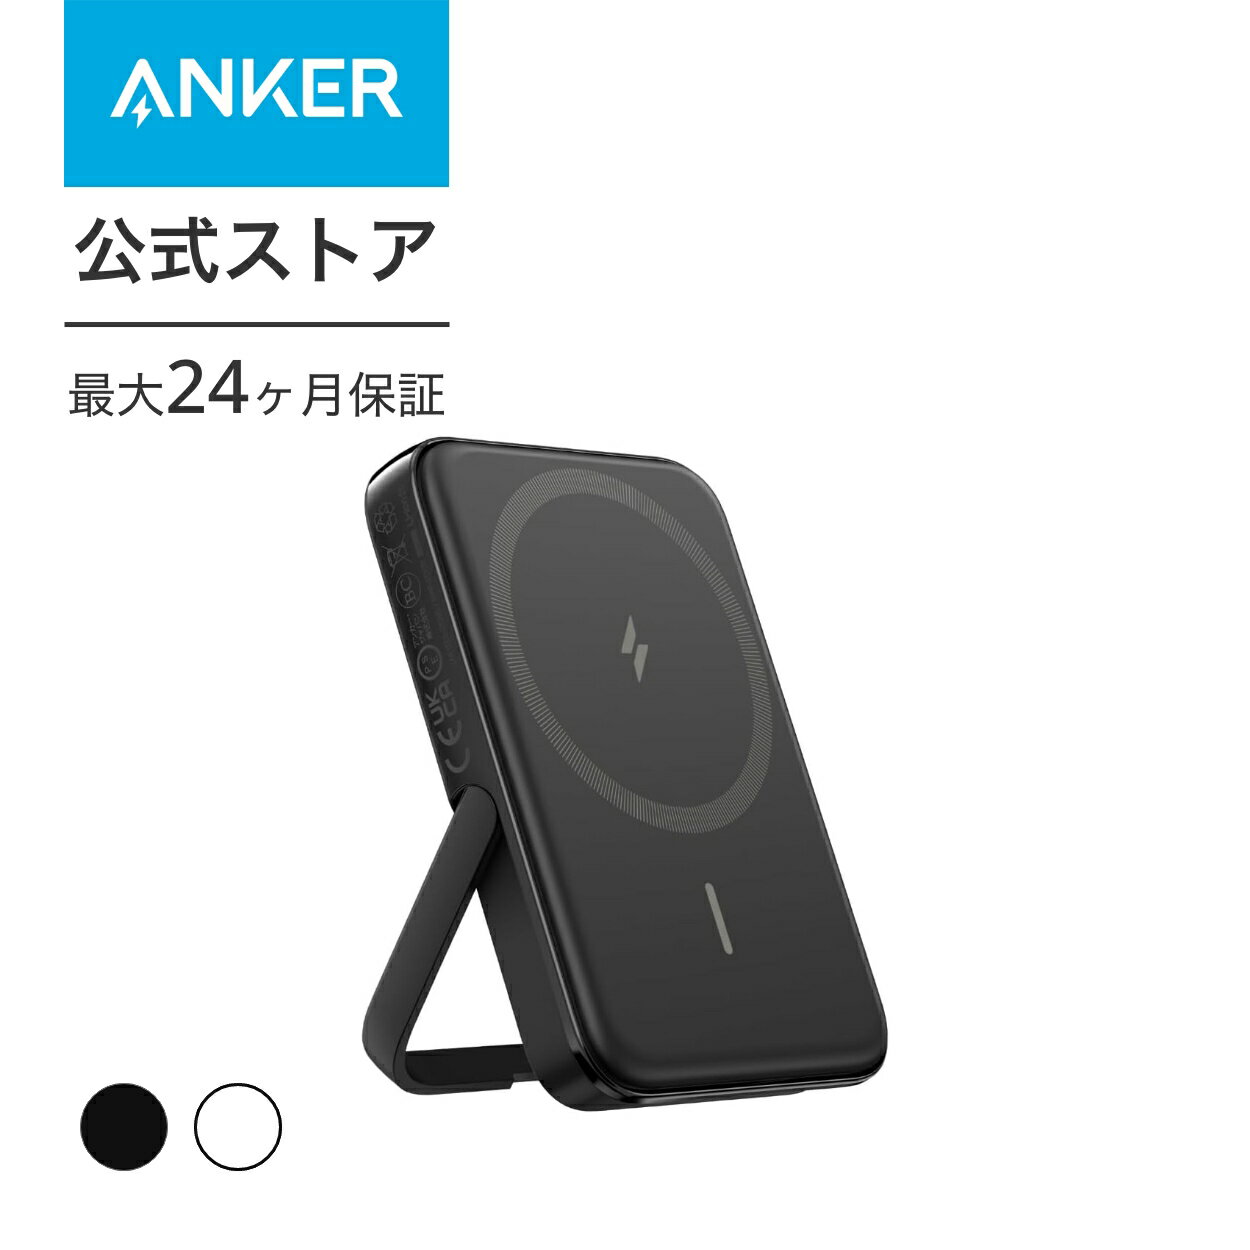 Anker モバイルバッテリー Anker MagGo Power Bank (5000mAh, 7.5W, Stand) マグネット式ワイヤレス充電対応 5000mAh コンパクト モバイルバッテリー 折りたたみ式スタンド iPhone 14 / 13 / 12 シリーズ専用